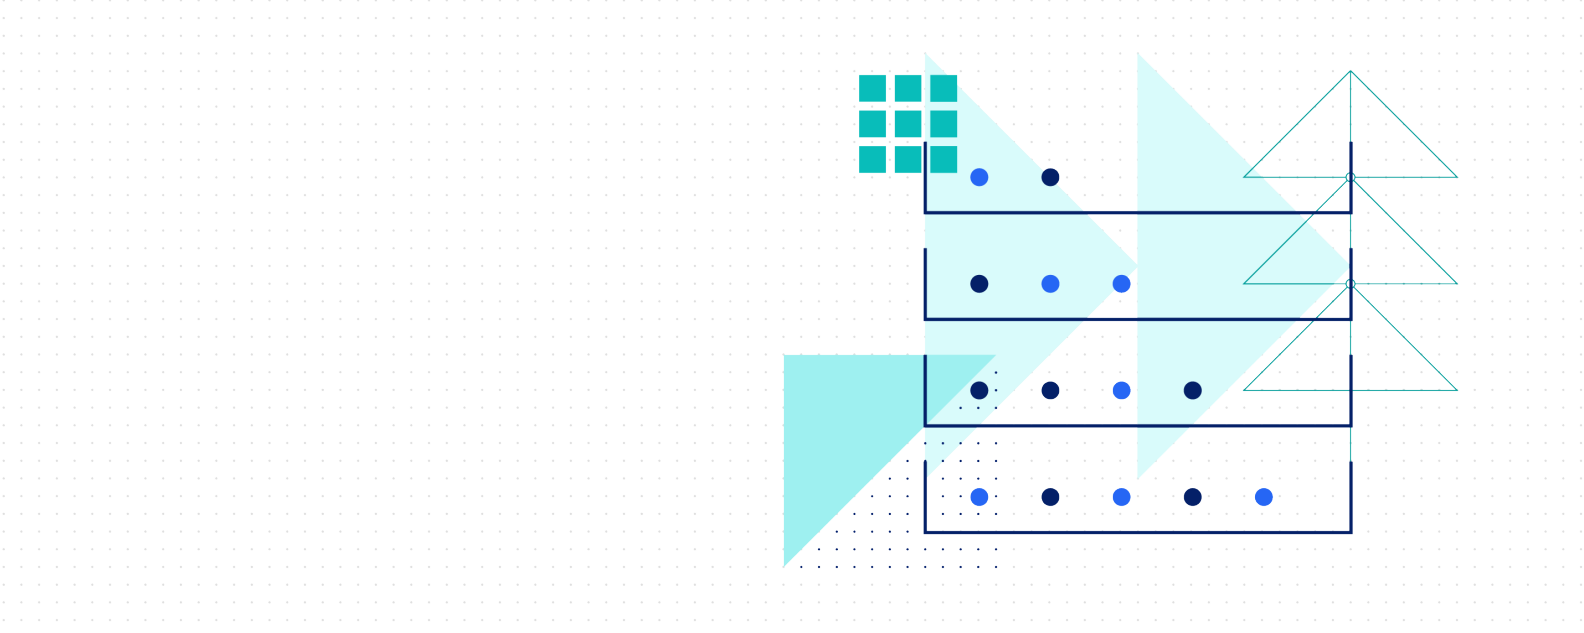 Immagine che mostra strati di punti, triangoli e rettangoli